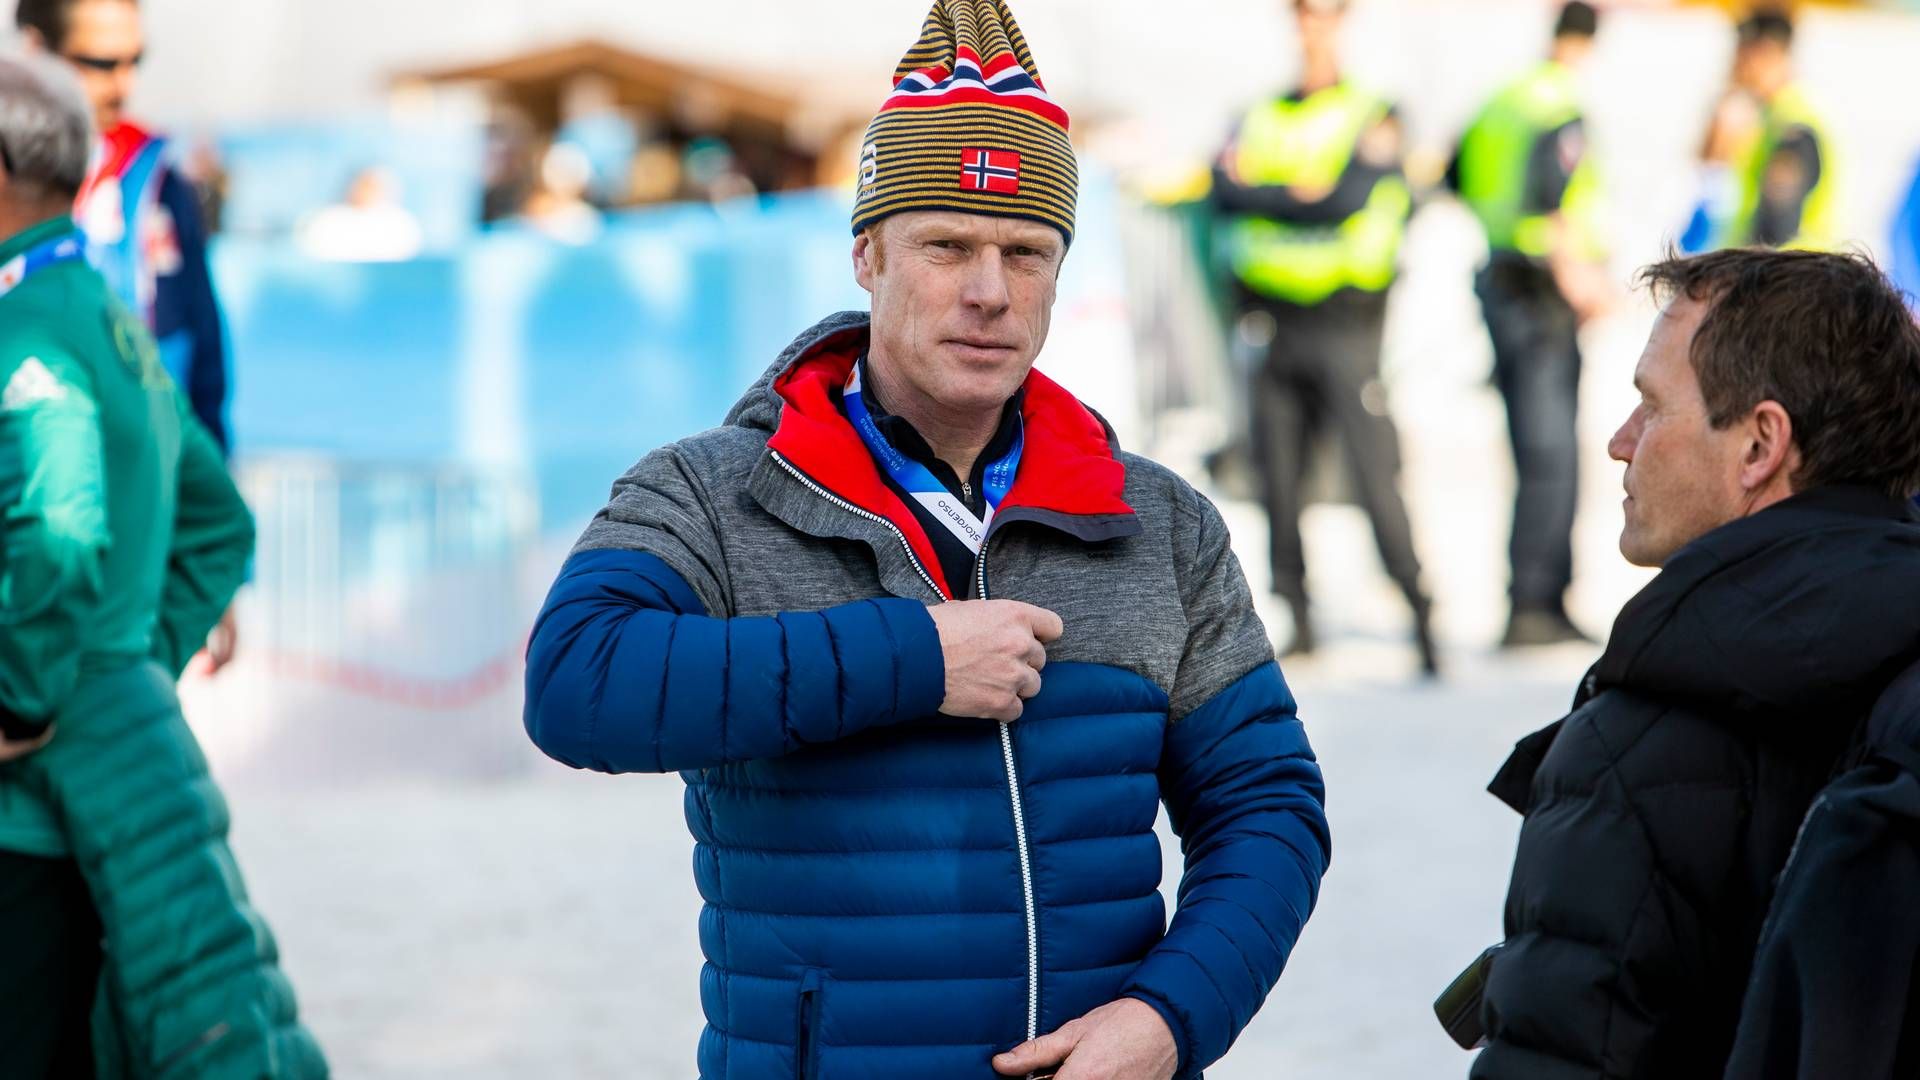 NYTT PROSJEKT: Bjørn Dæhlie har sammen med Rolf Arne Høyen og Rino Santocono sikret seg en utviklingstomt i Bodø. | Foto: Tore Meek, NTB